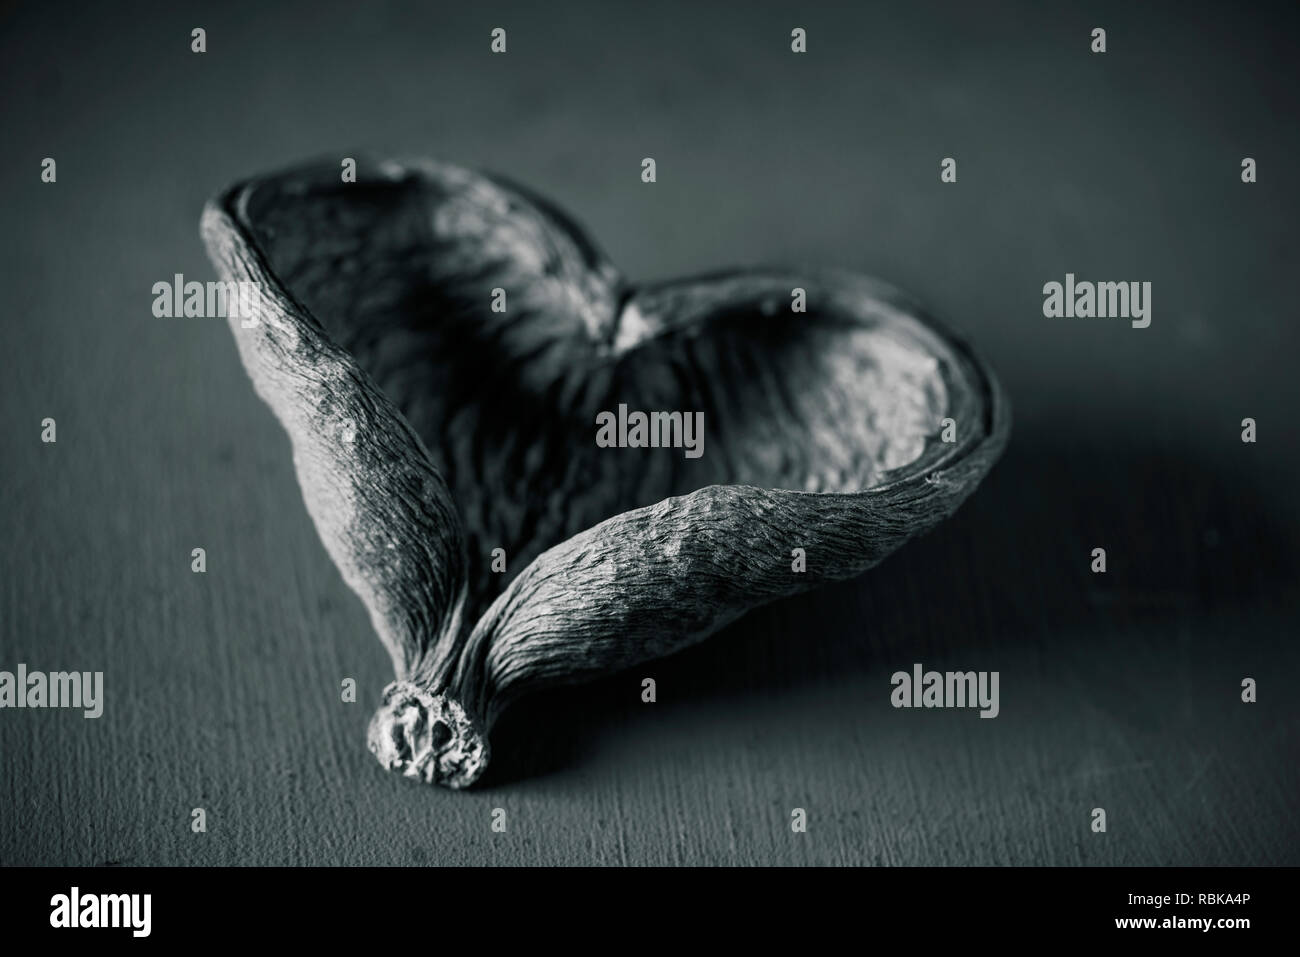 Nahaufnahme der getrockneten Haut einer Frucht in der Form eines Herzens auf einem dunklen Hintergrund in Schwarz und Weiß, mit einem leichten Vignette hinzugefügt Stockfoto